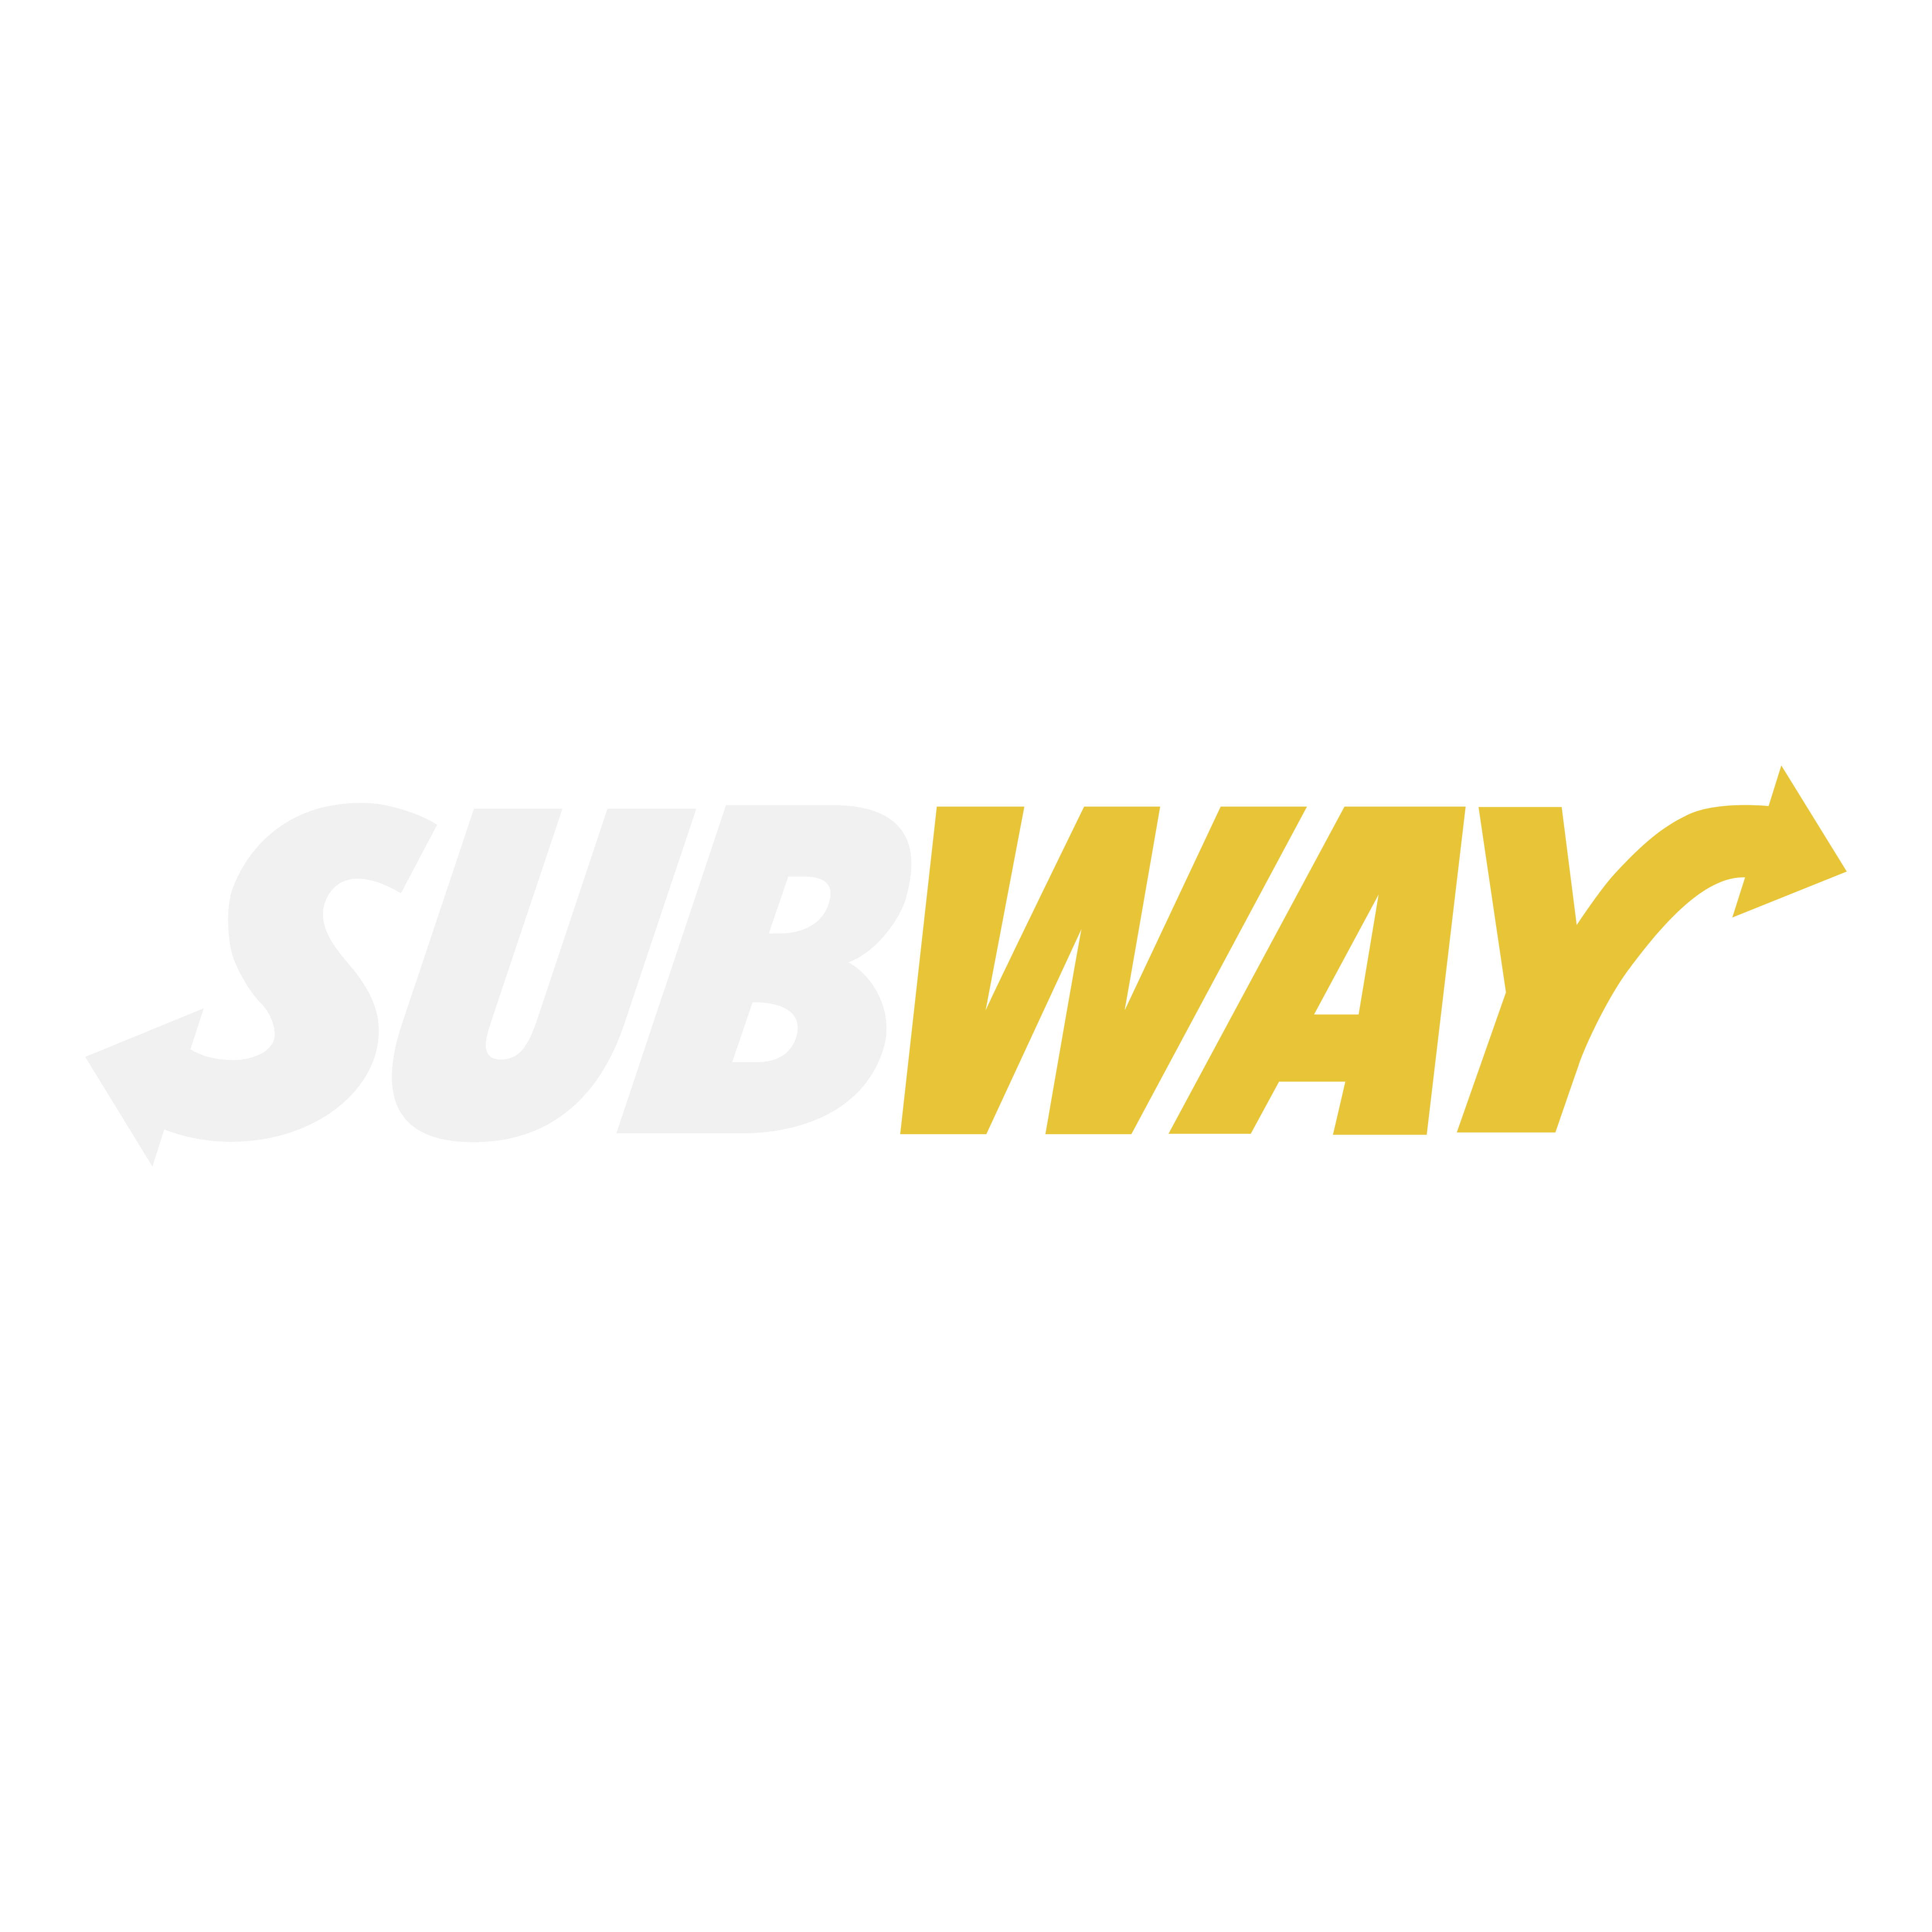 Subway Logo PNG - 177349